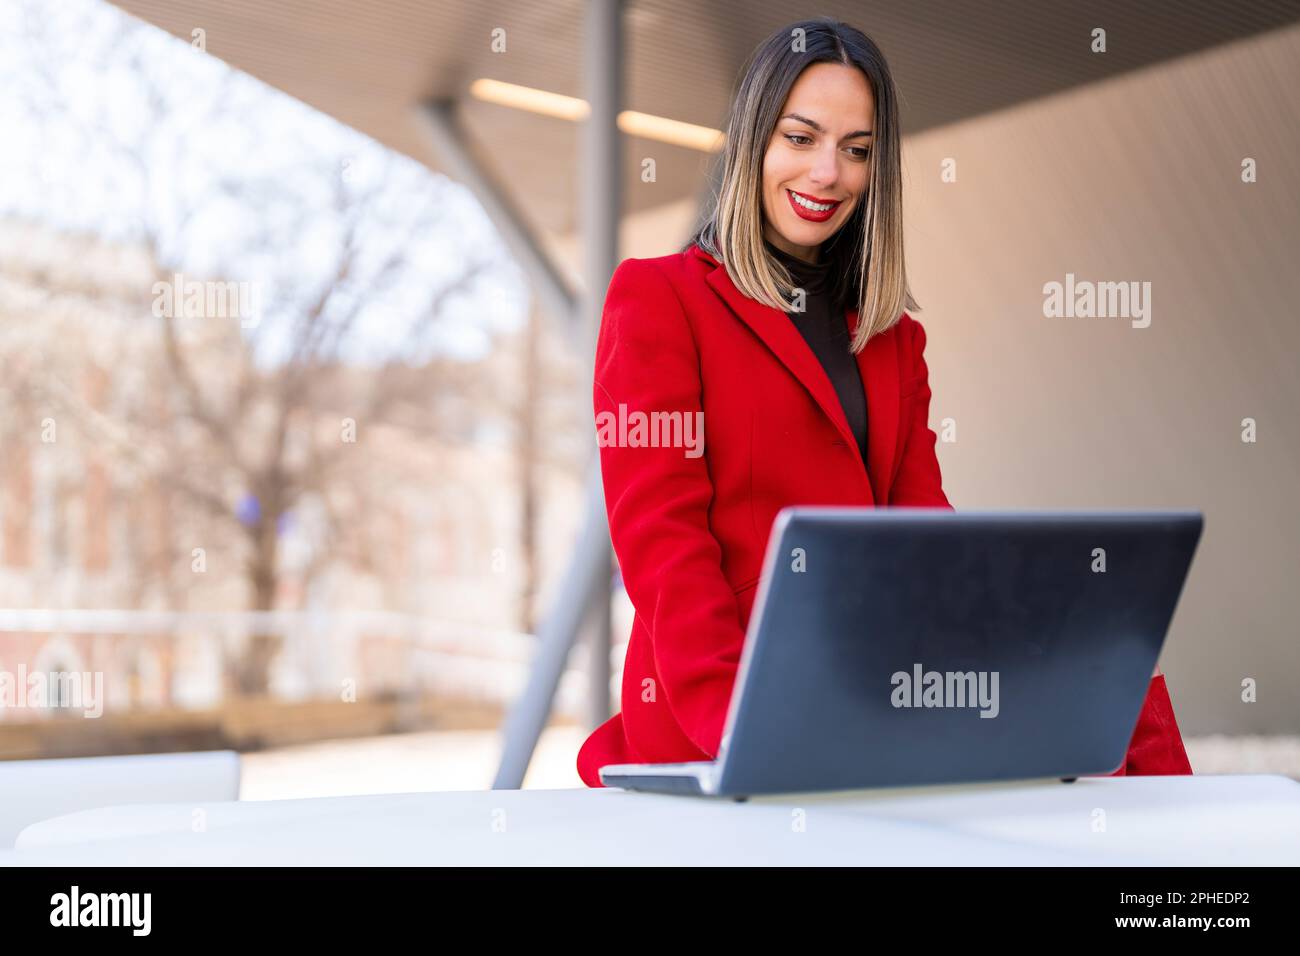 Glückliche junge Frau mit dunkelblondem Haar und rotem Lippenstift, die am Tisch sitzt und vor verschwommenem Hintergrund auf den Laptop-Bildschirm schaut Stockfoto